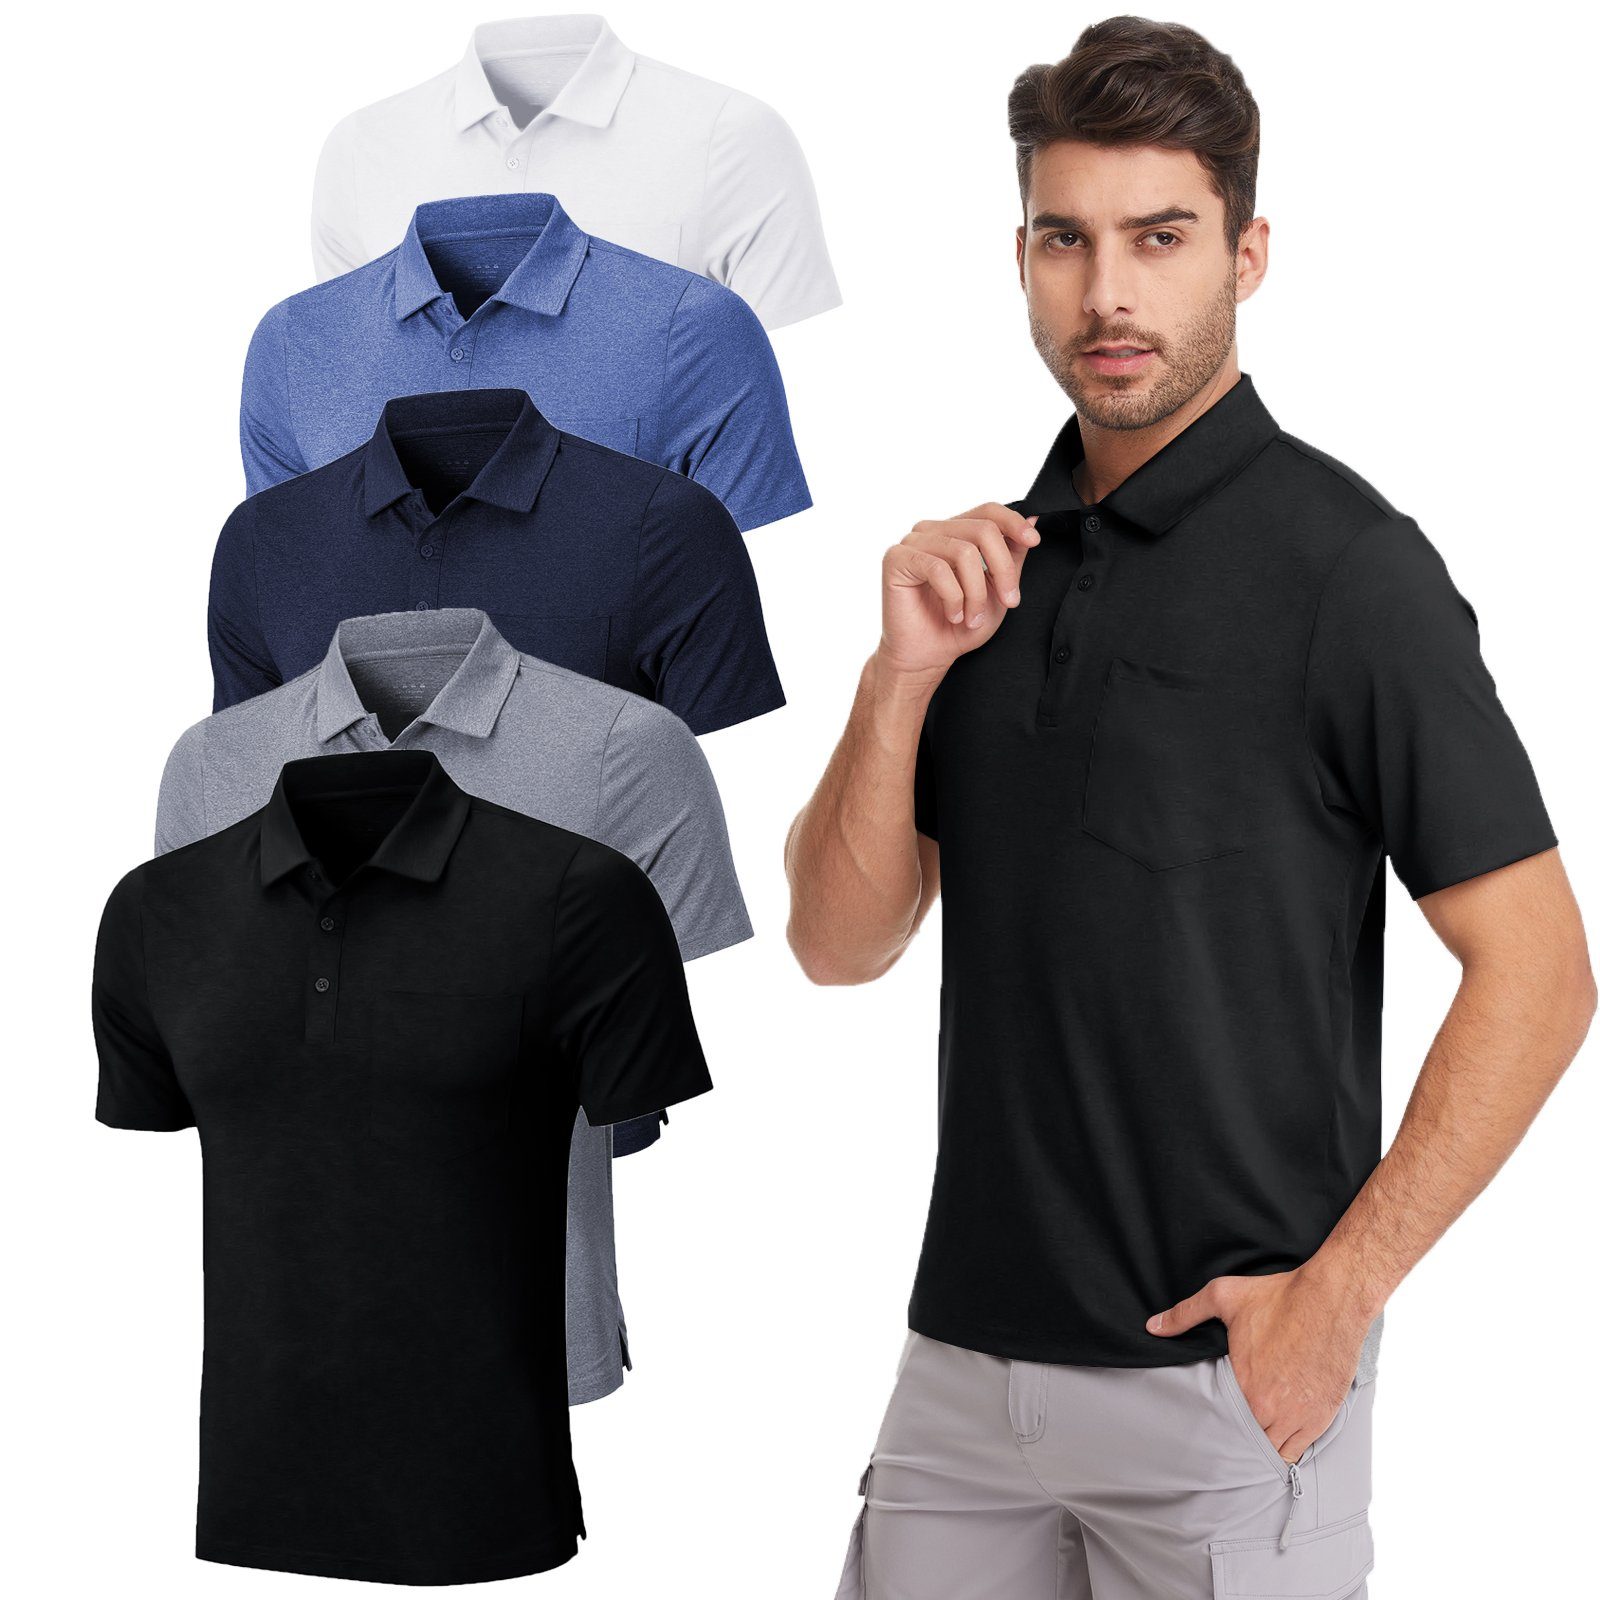 MEETYOO Poloshirt Herren Poloshirt Polohemd (Kurzarm T-Shirt, Classic Tee Hemd) Unifarben, Casual, Button-Down-Kragen, Atmungsaktiv Blau